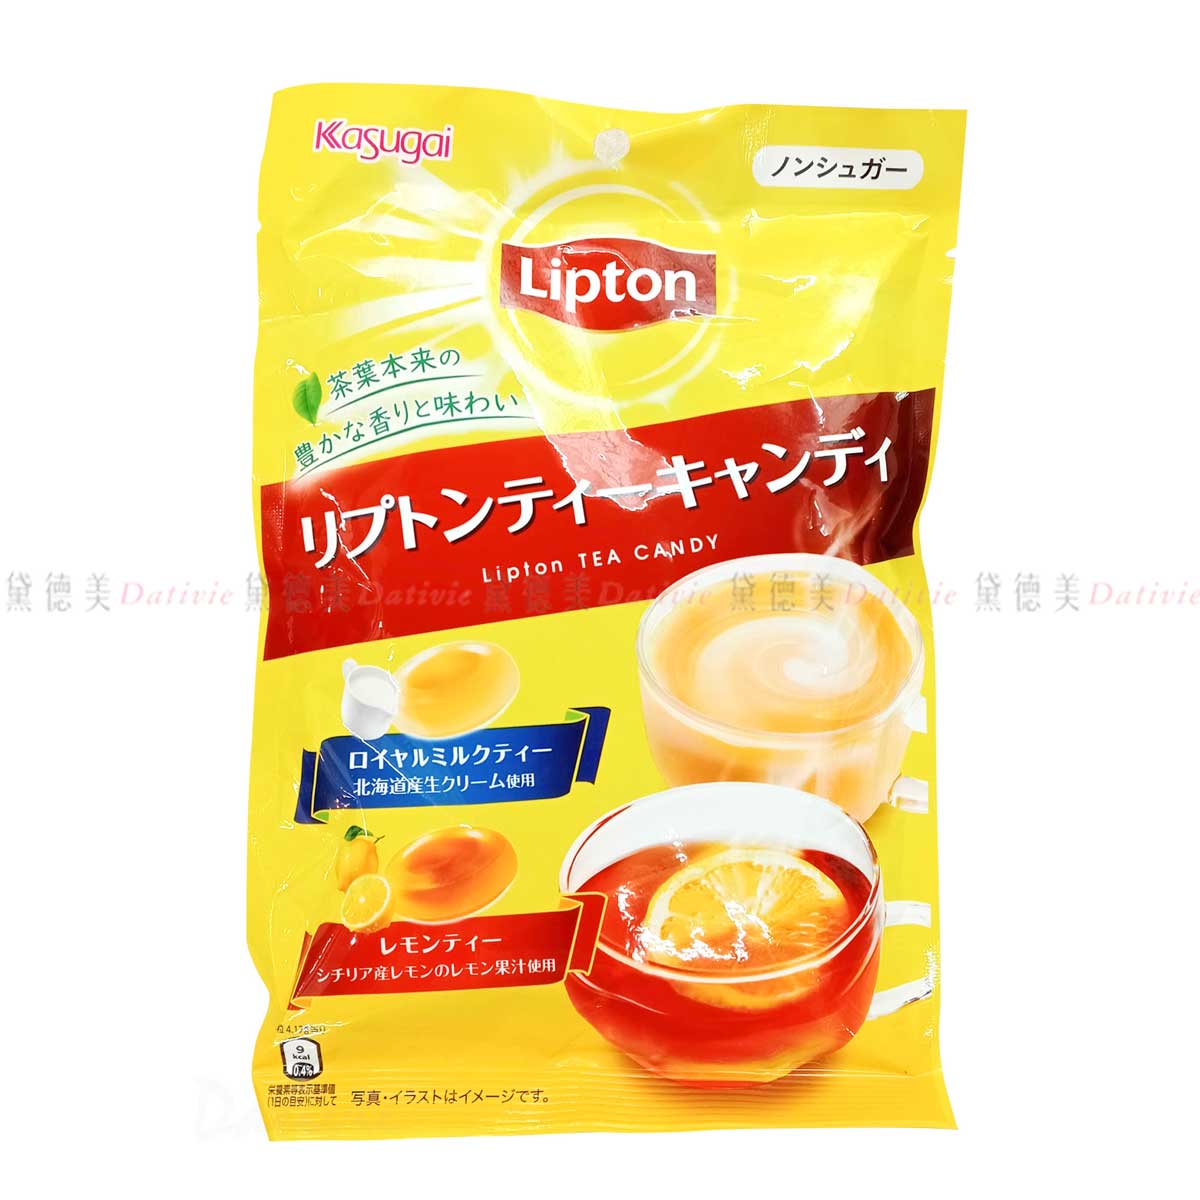 雙茶風味糖 58g-檸檬紅茶 皇家奶茶 春日井x立頓 kasugai Lipton 日本進口製造